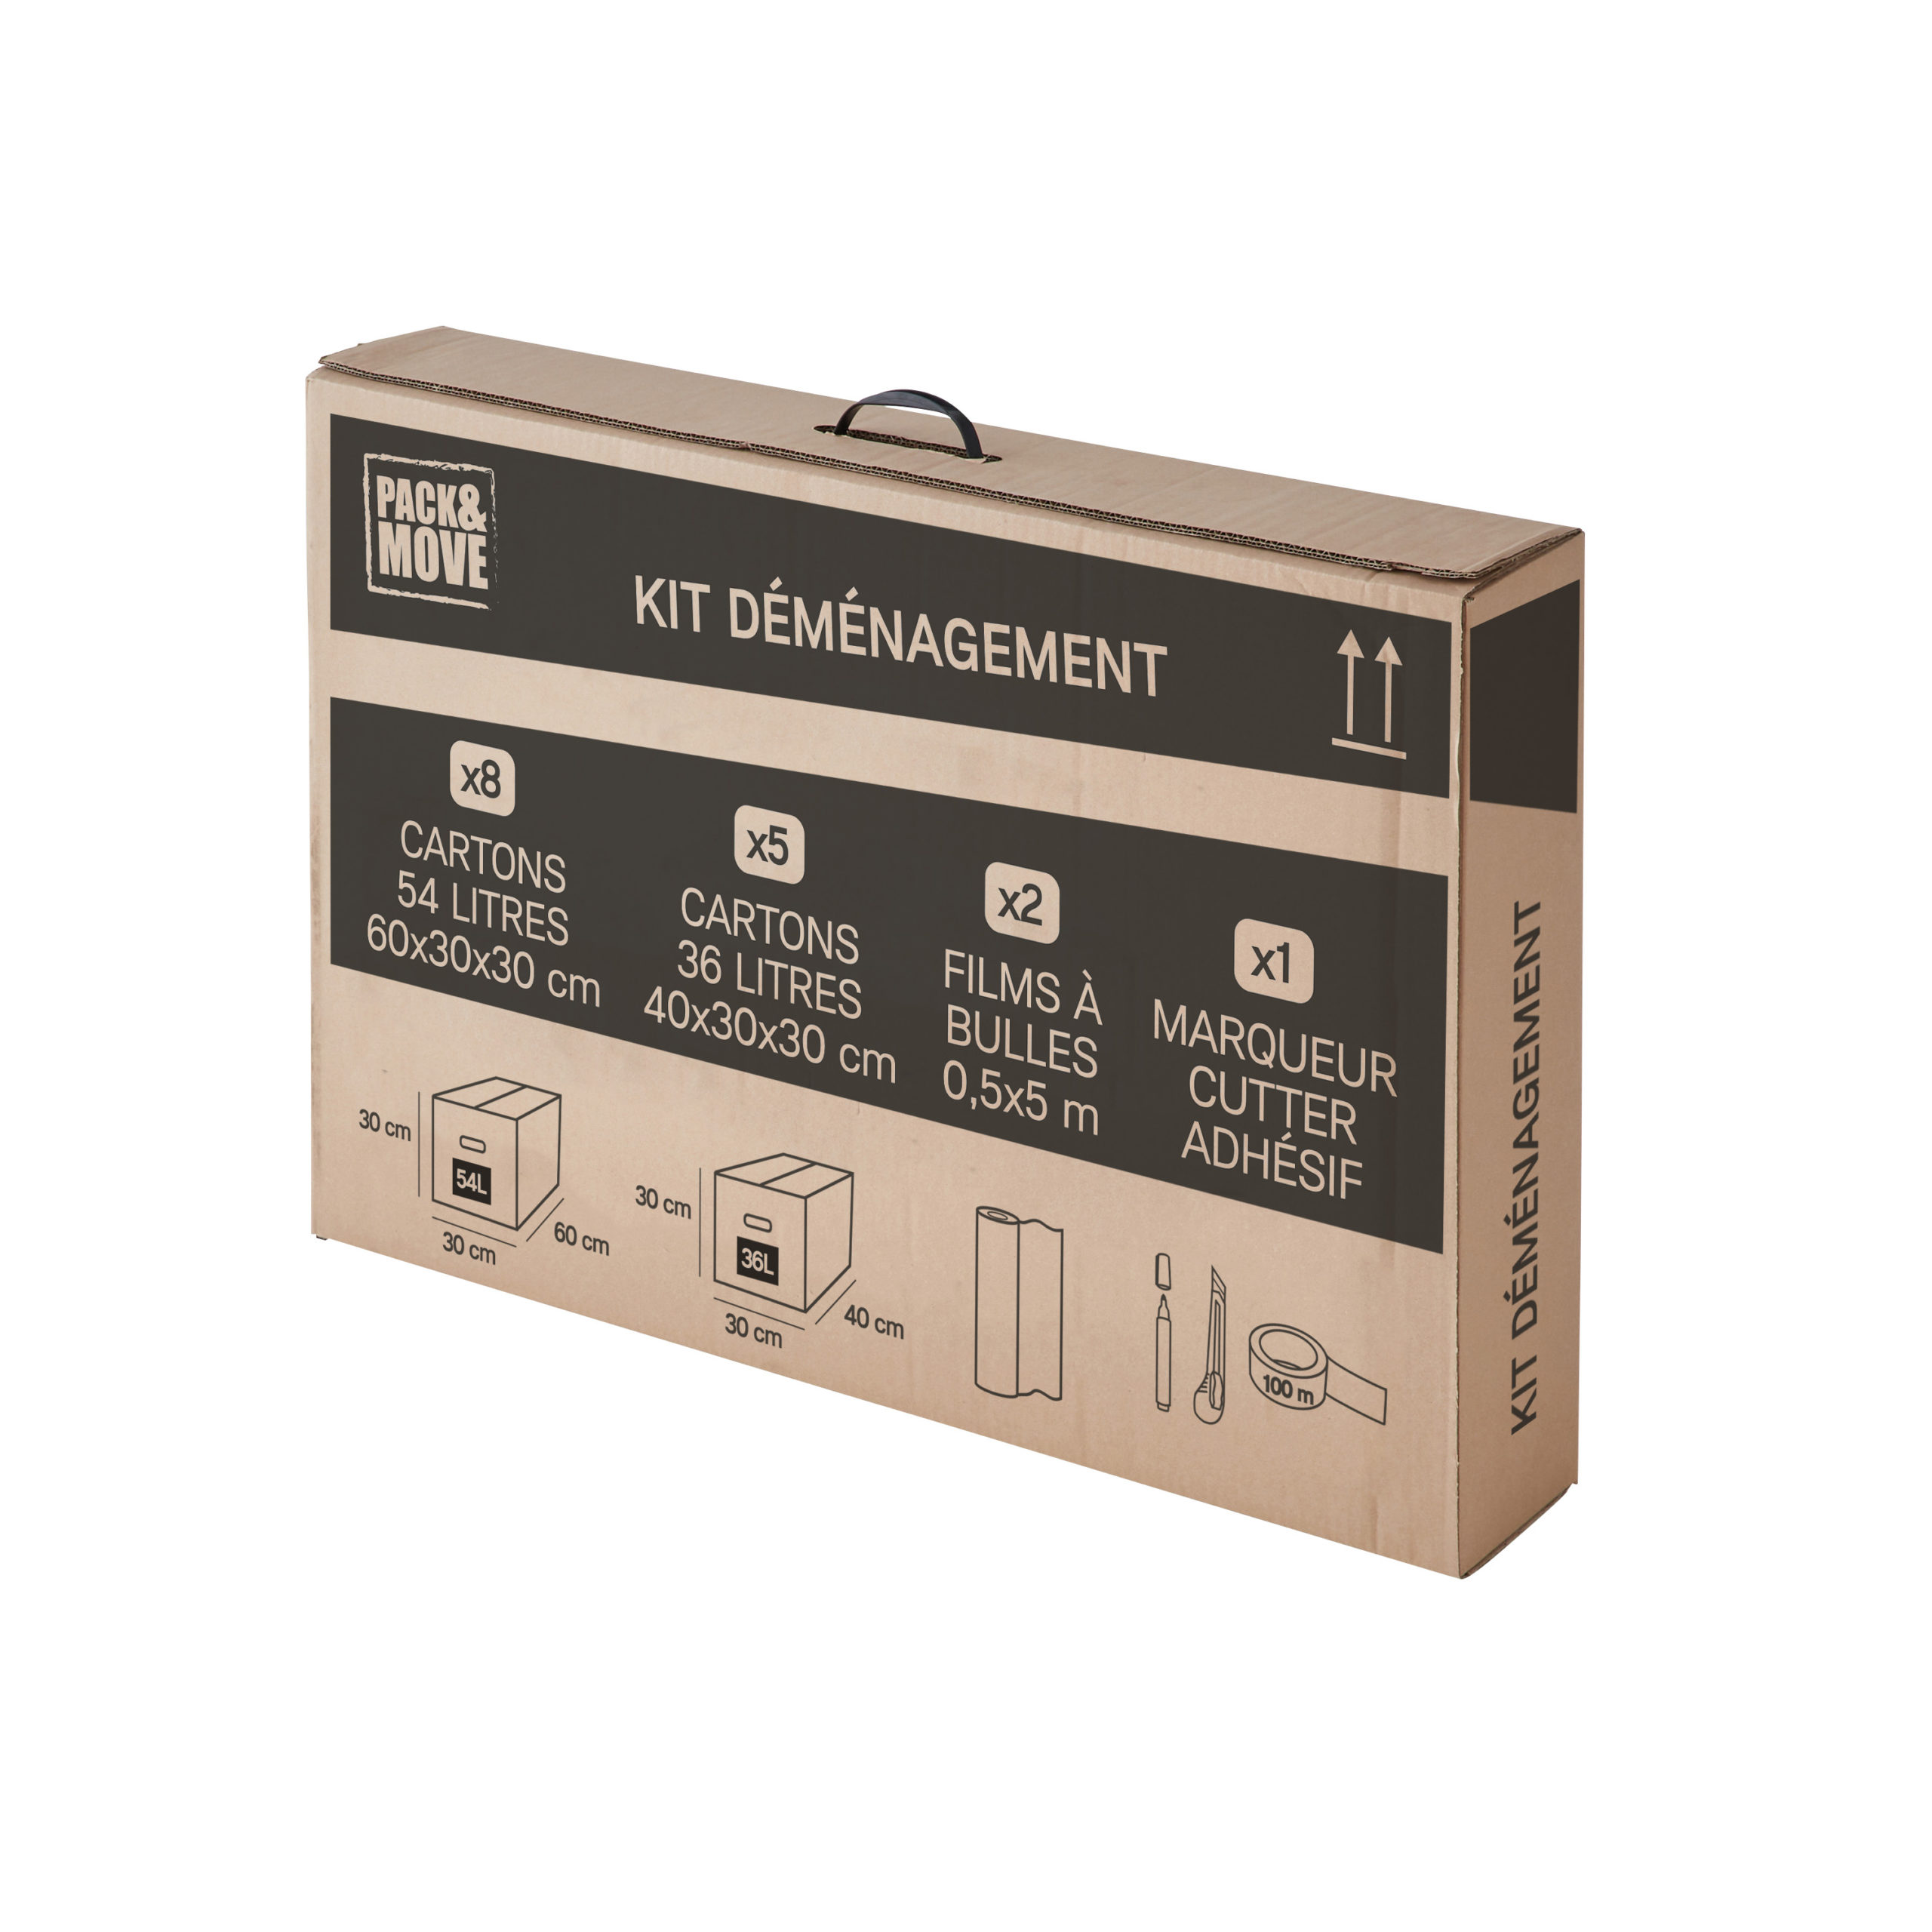 Kit déménagement essentiel T2 - Kits de déménagement